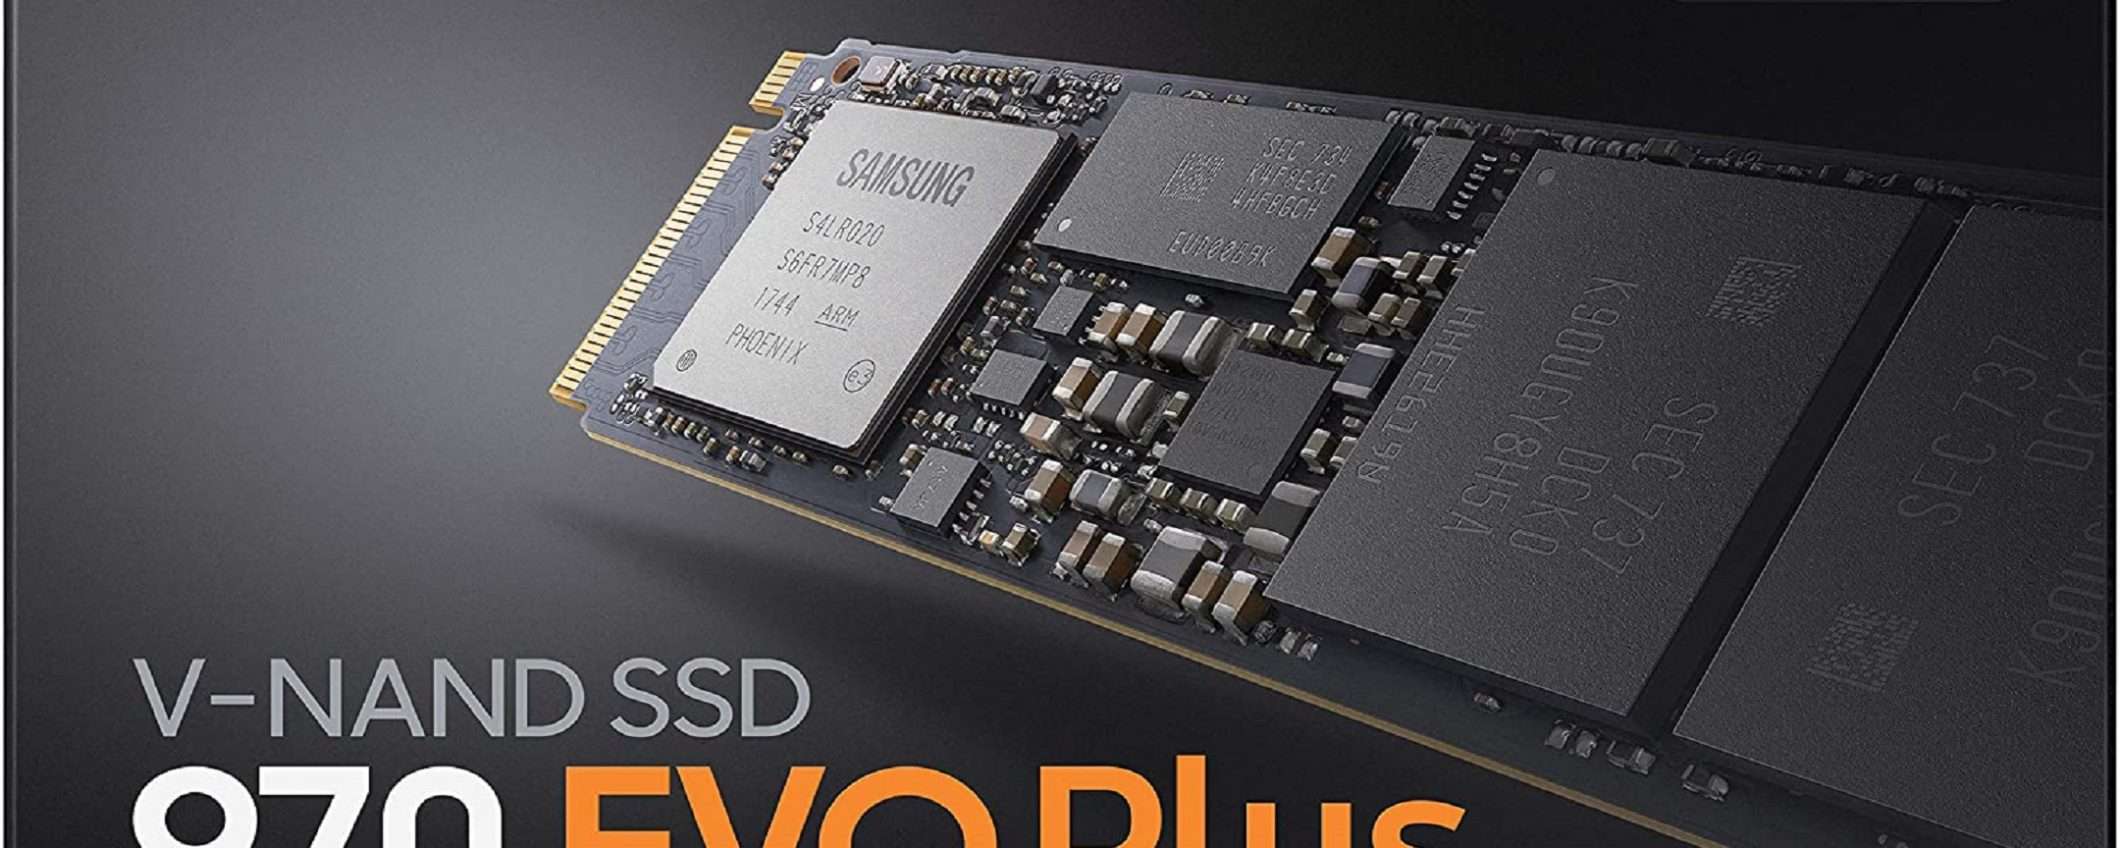 Samsung 970 EVO Plus da 500 GB: ottima SSD a prezzo BOMBA